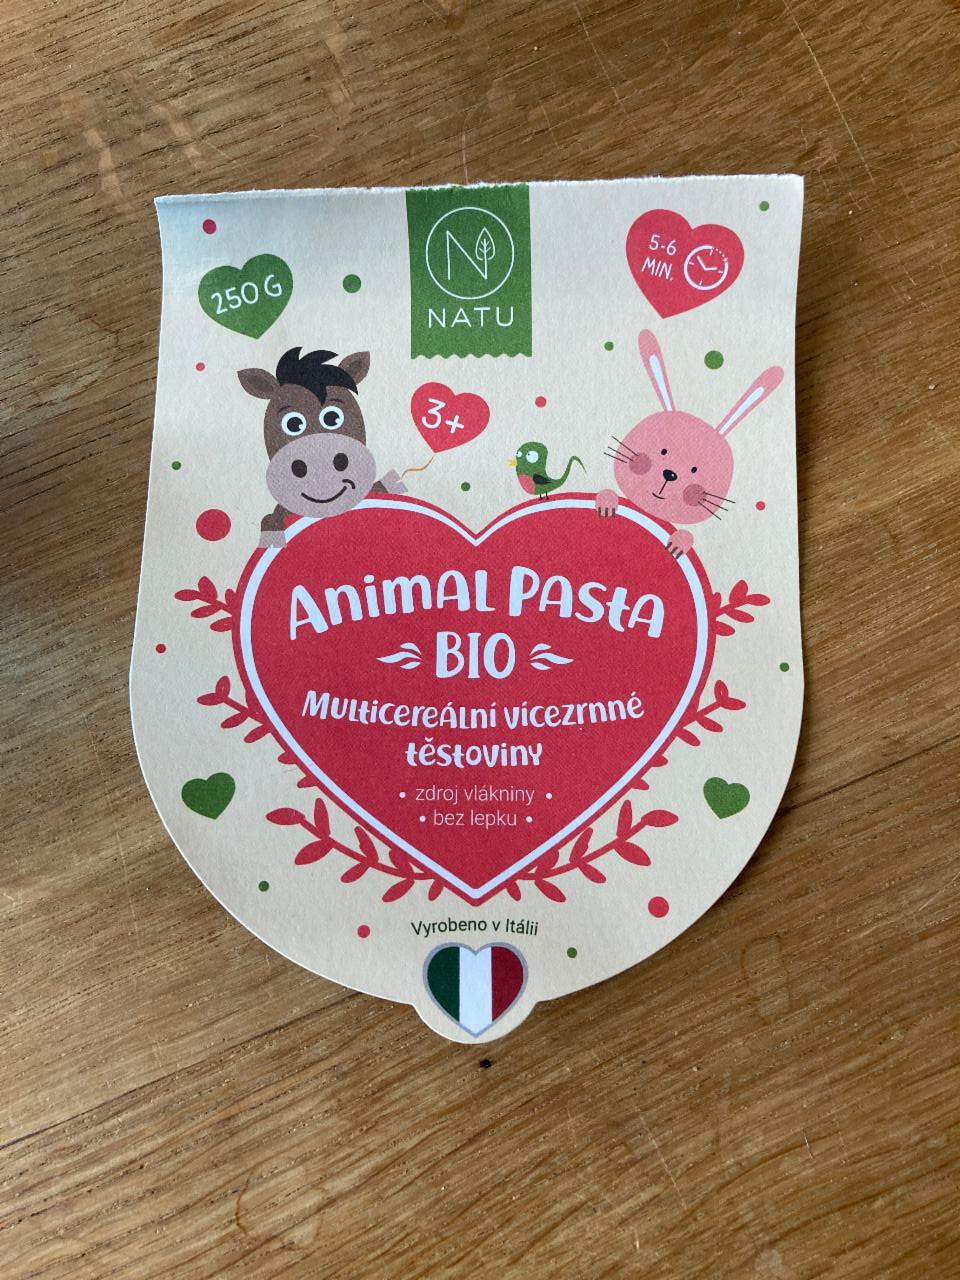 Fotografie - Animal pasta BIO multicereální vícezrné těstoviny